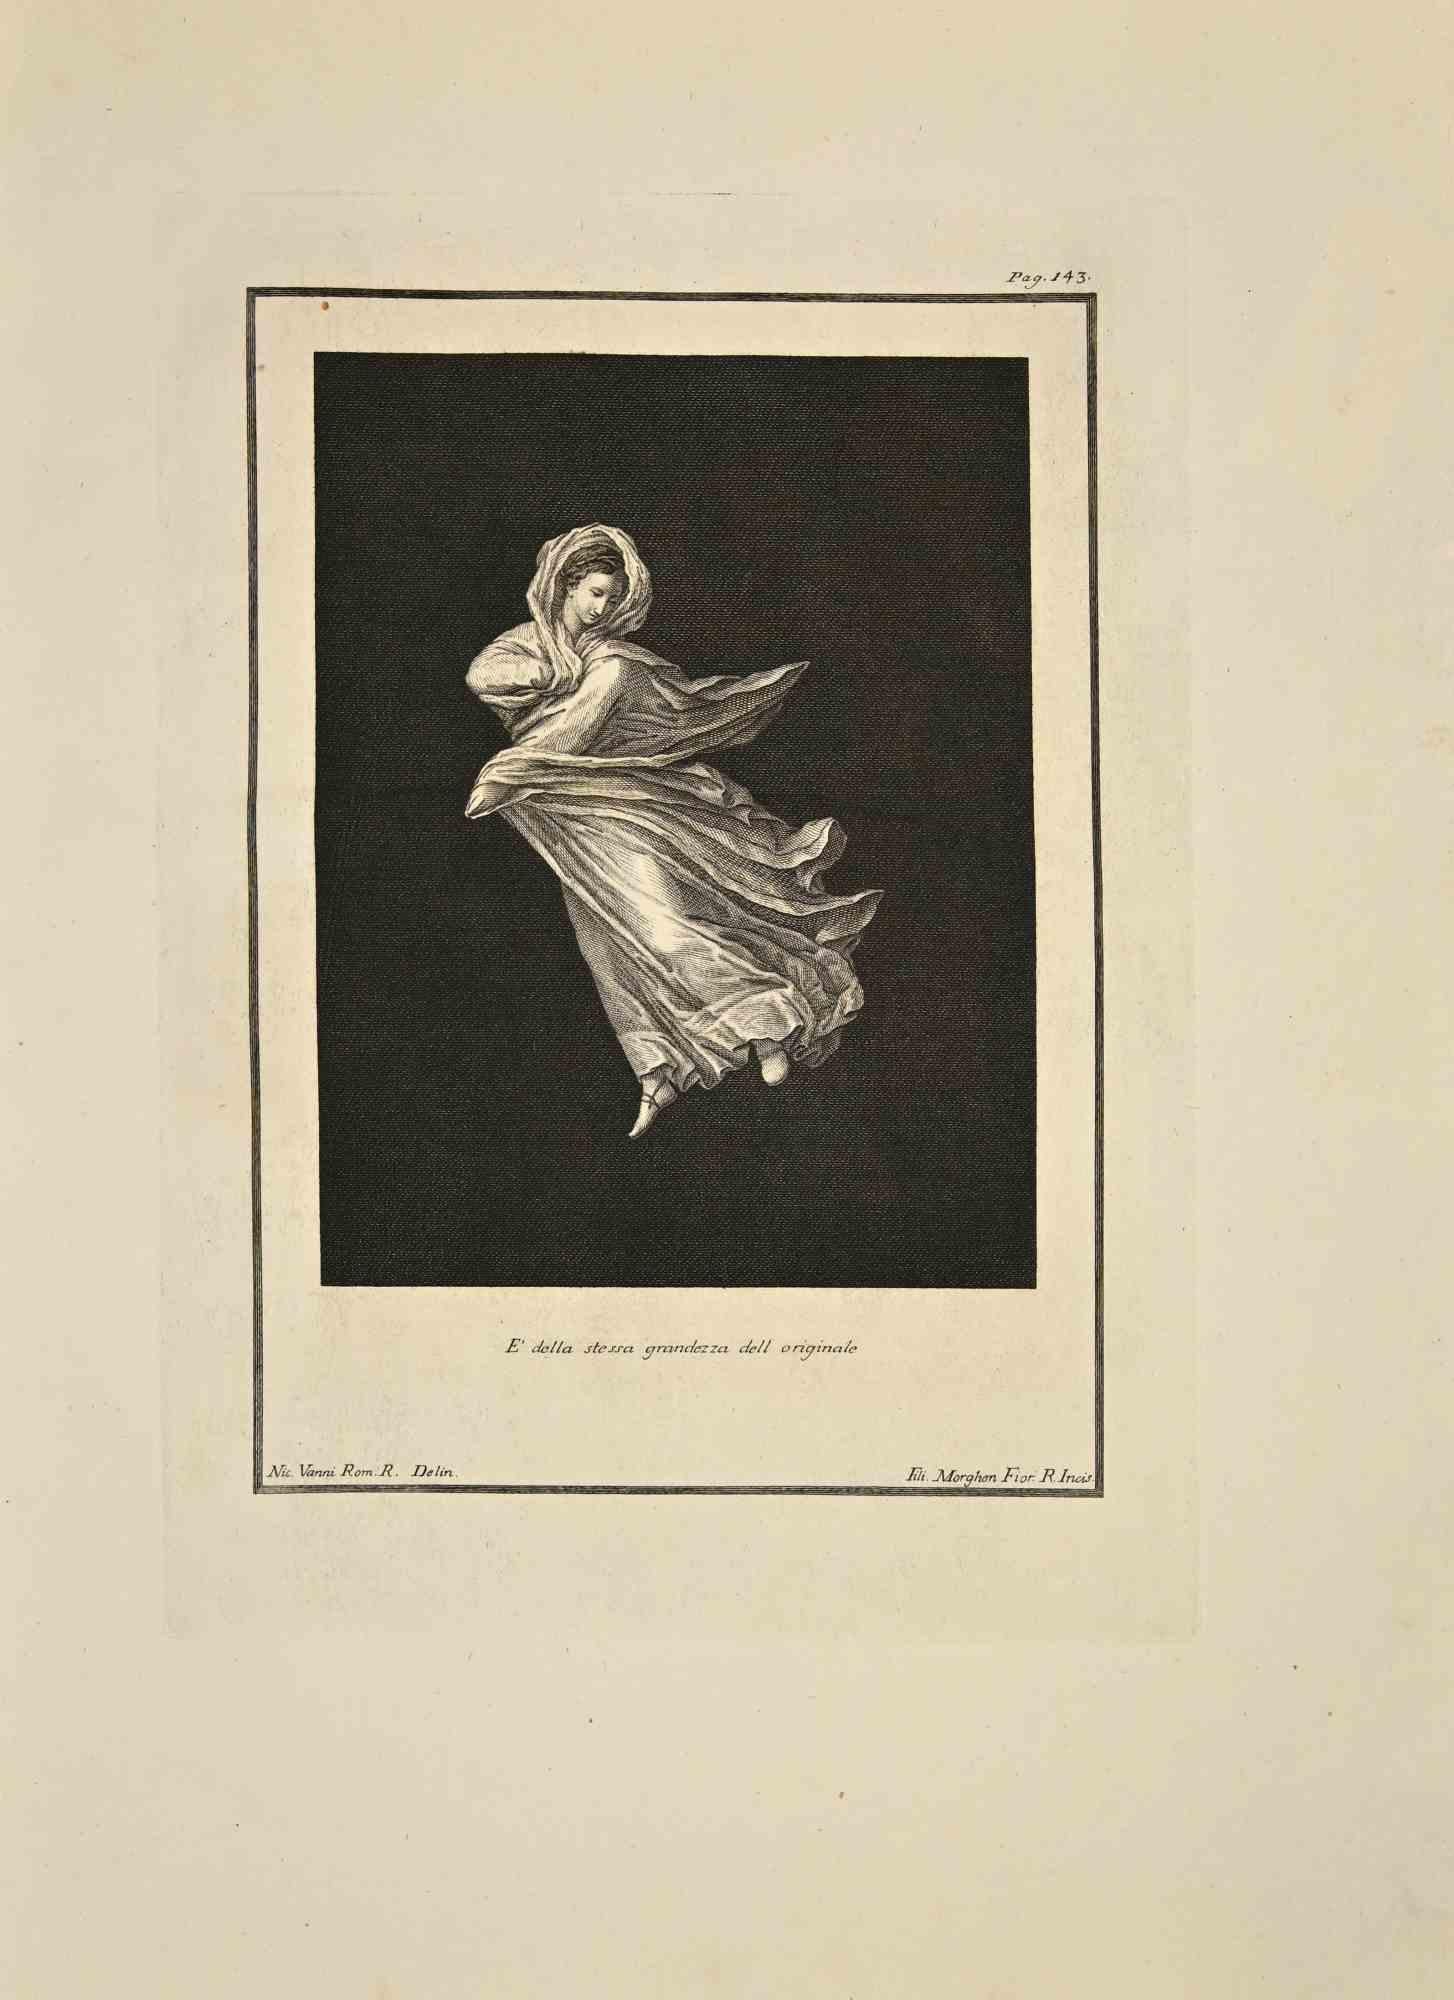 La Maenade dansante des "Antiquités d'Herculanum" est une gravure sur papier réalisée par Filippo Morghen au 18e siècle.

Signé sur la plaque.

Bon état avec quelques pliures.

La gravure appartient à la suite d'estampes "Antiquités d'Herculanum